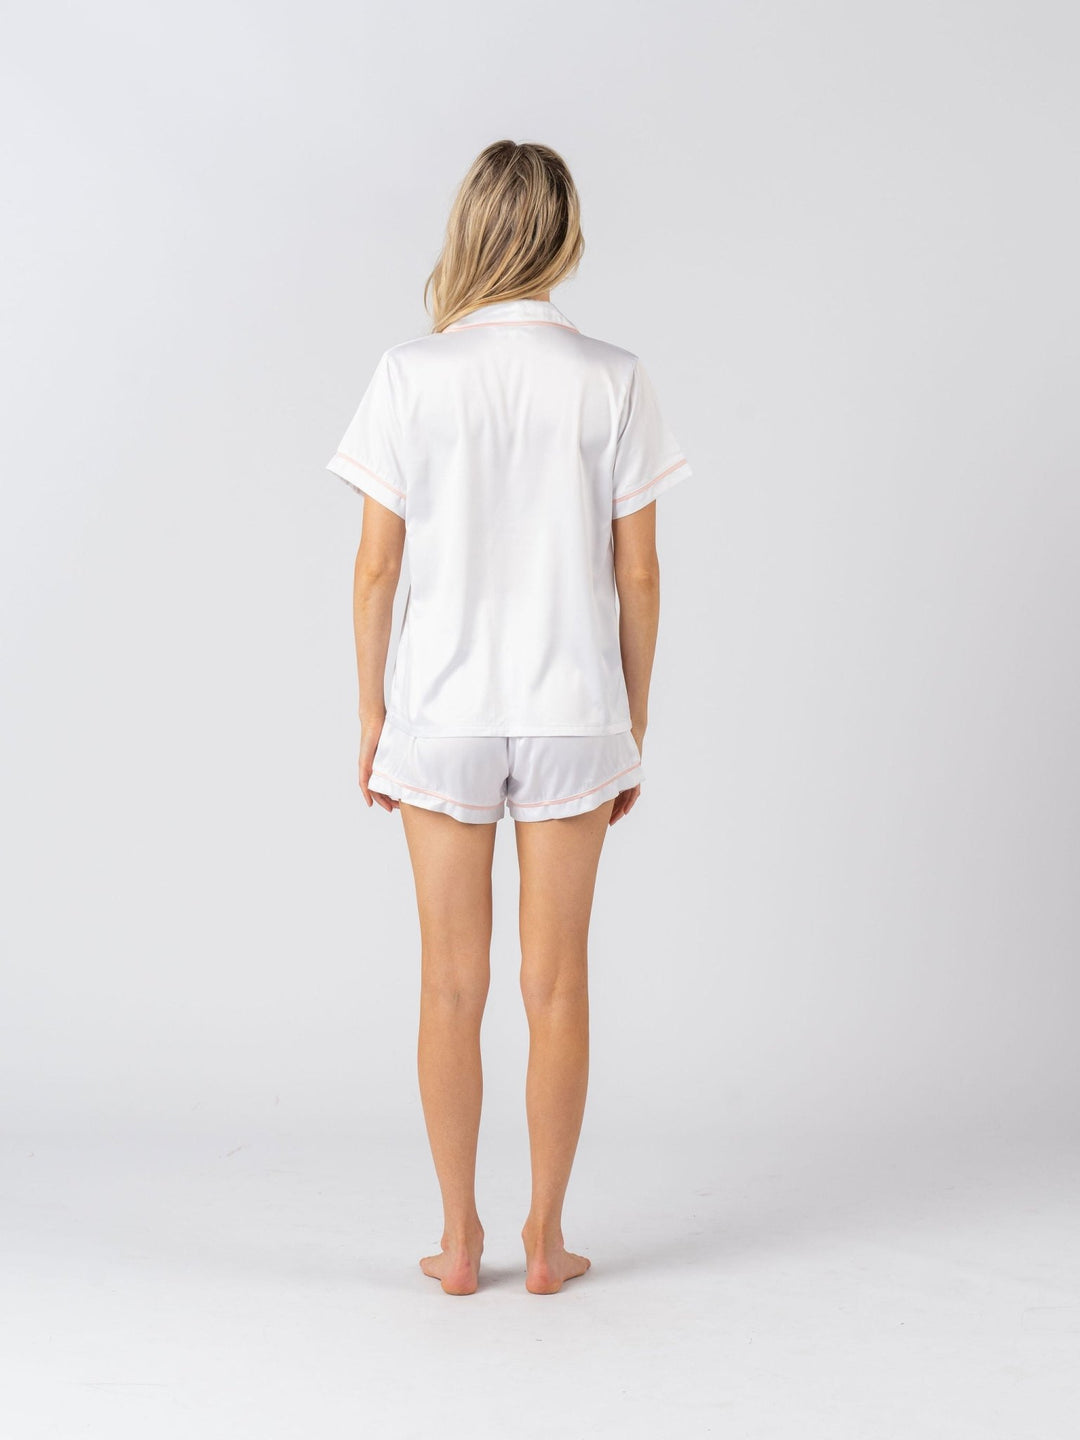 Satin Personalised Pyjama Set - Short Sleeve White/Baby Pink